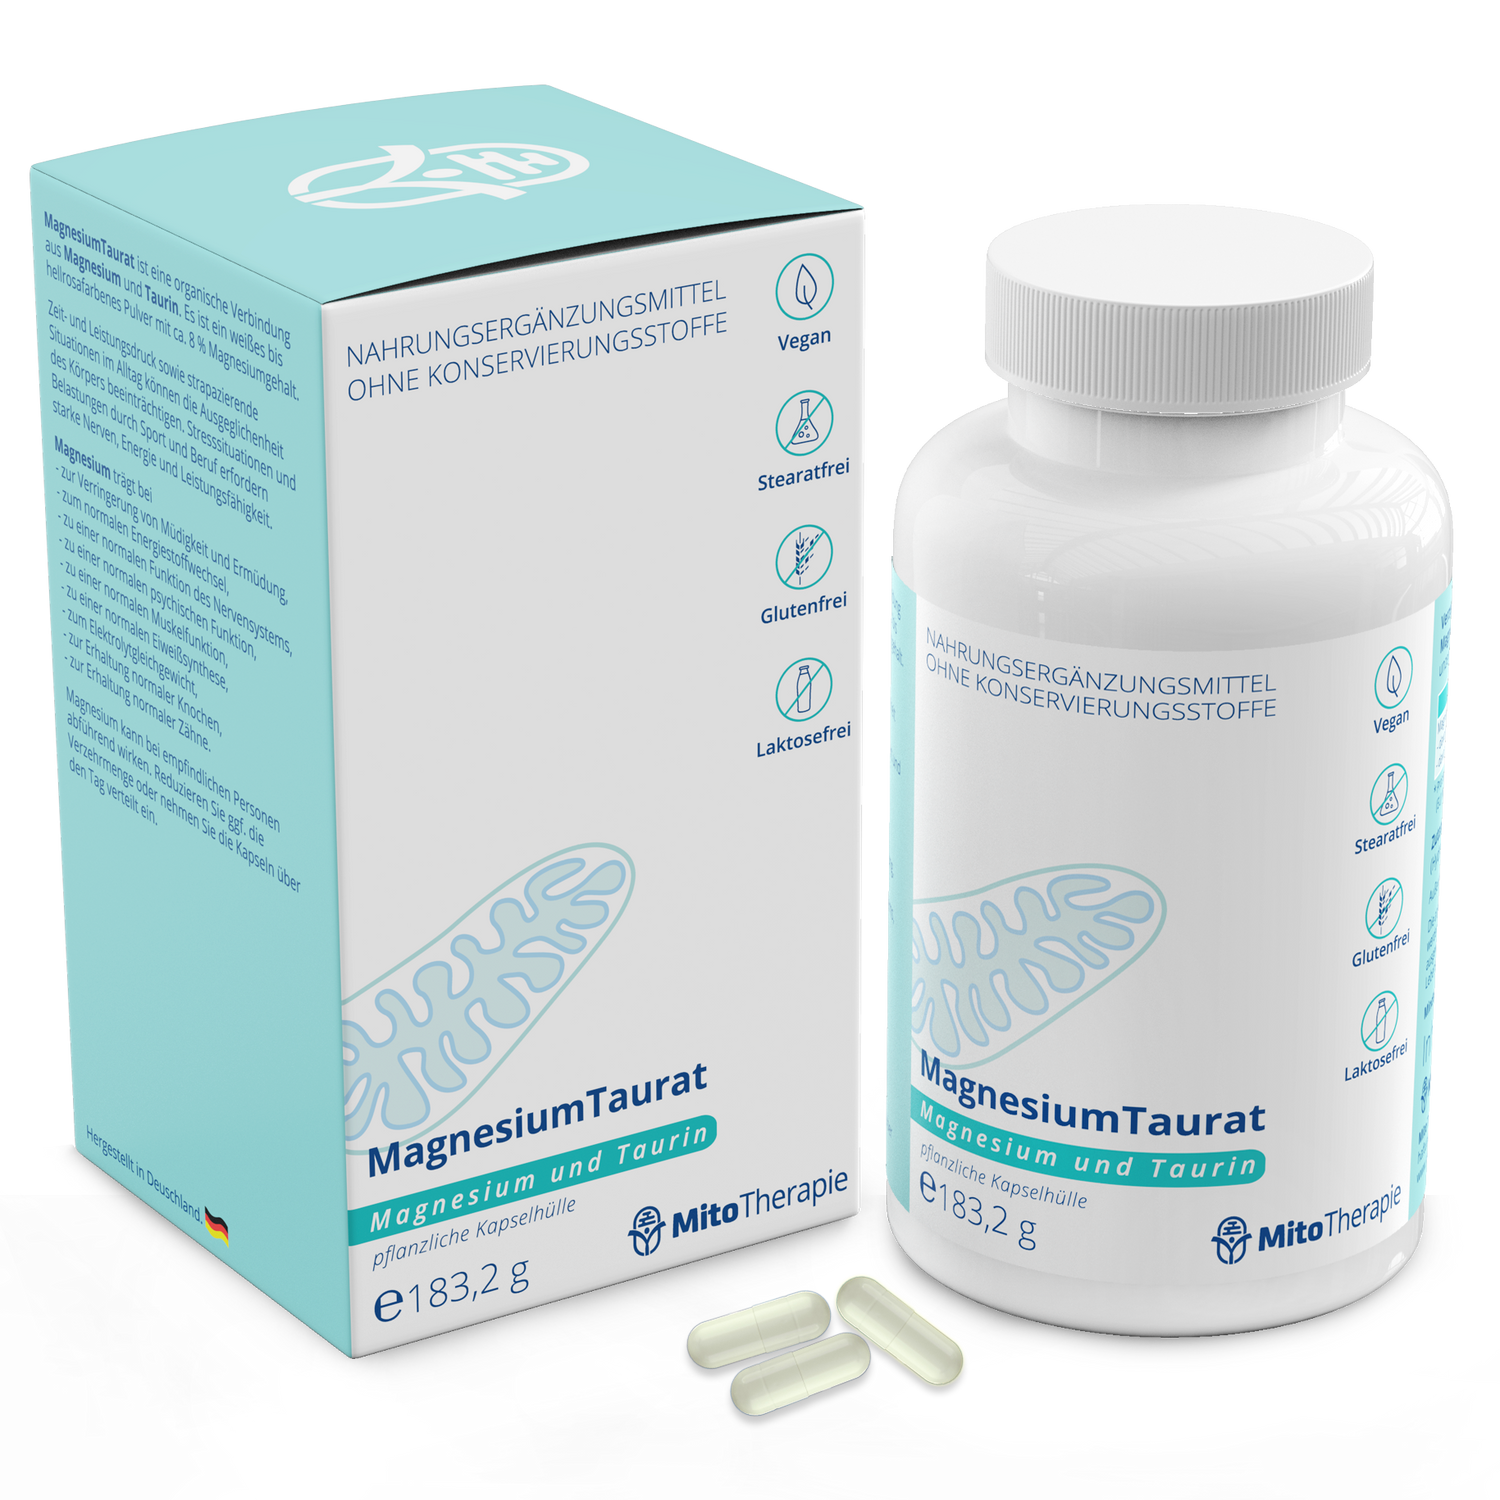 MagnesiumTaurat – das Zwei in einem Magnesium - 180 vegane Kapseln mit je 900 mg